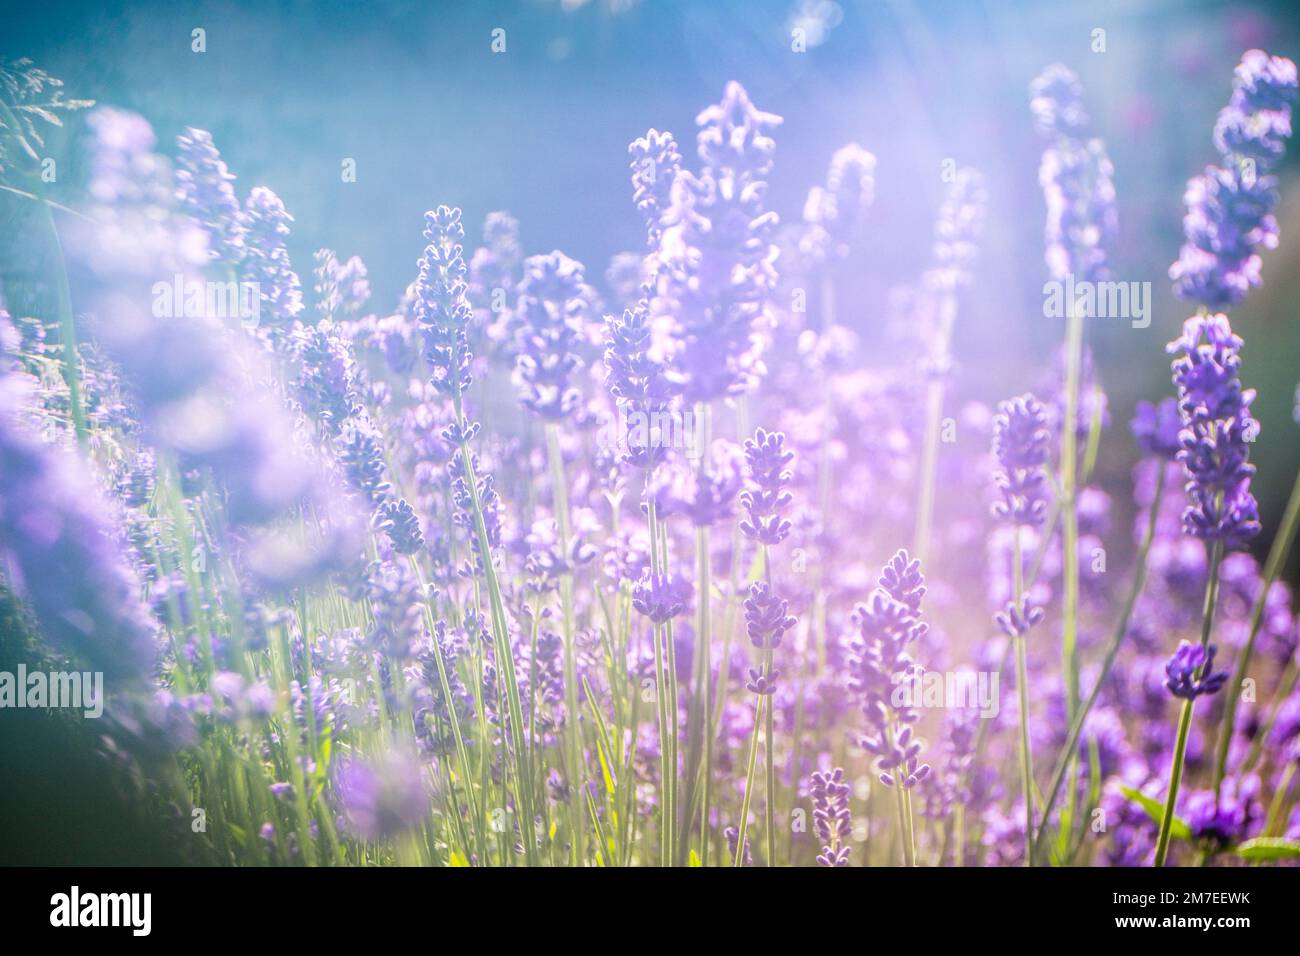 Ein Lavendel-Busch mit Sonnenschein, der abstrakte Muster über den Blumen erzeugt. Stockfoto